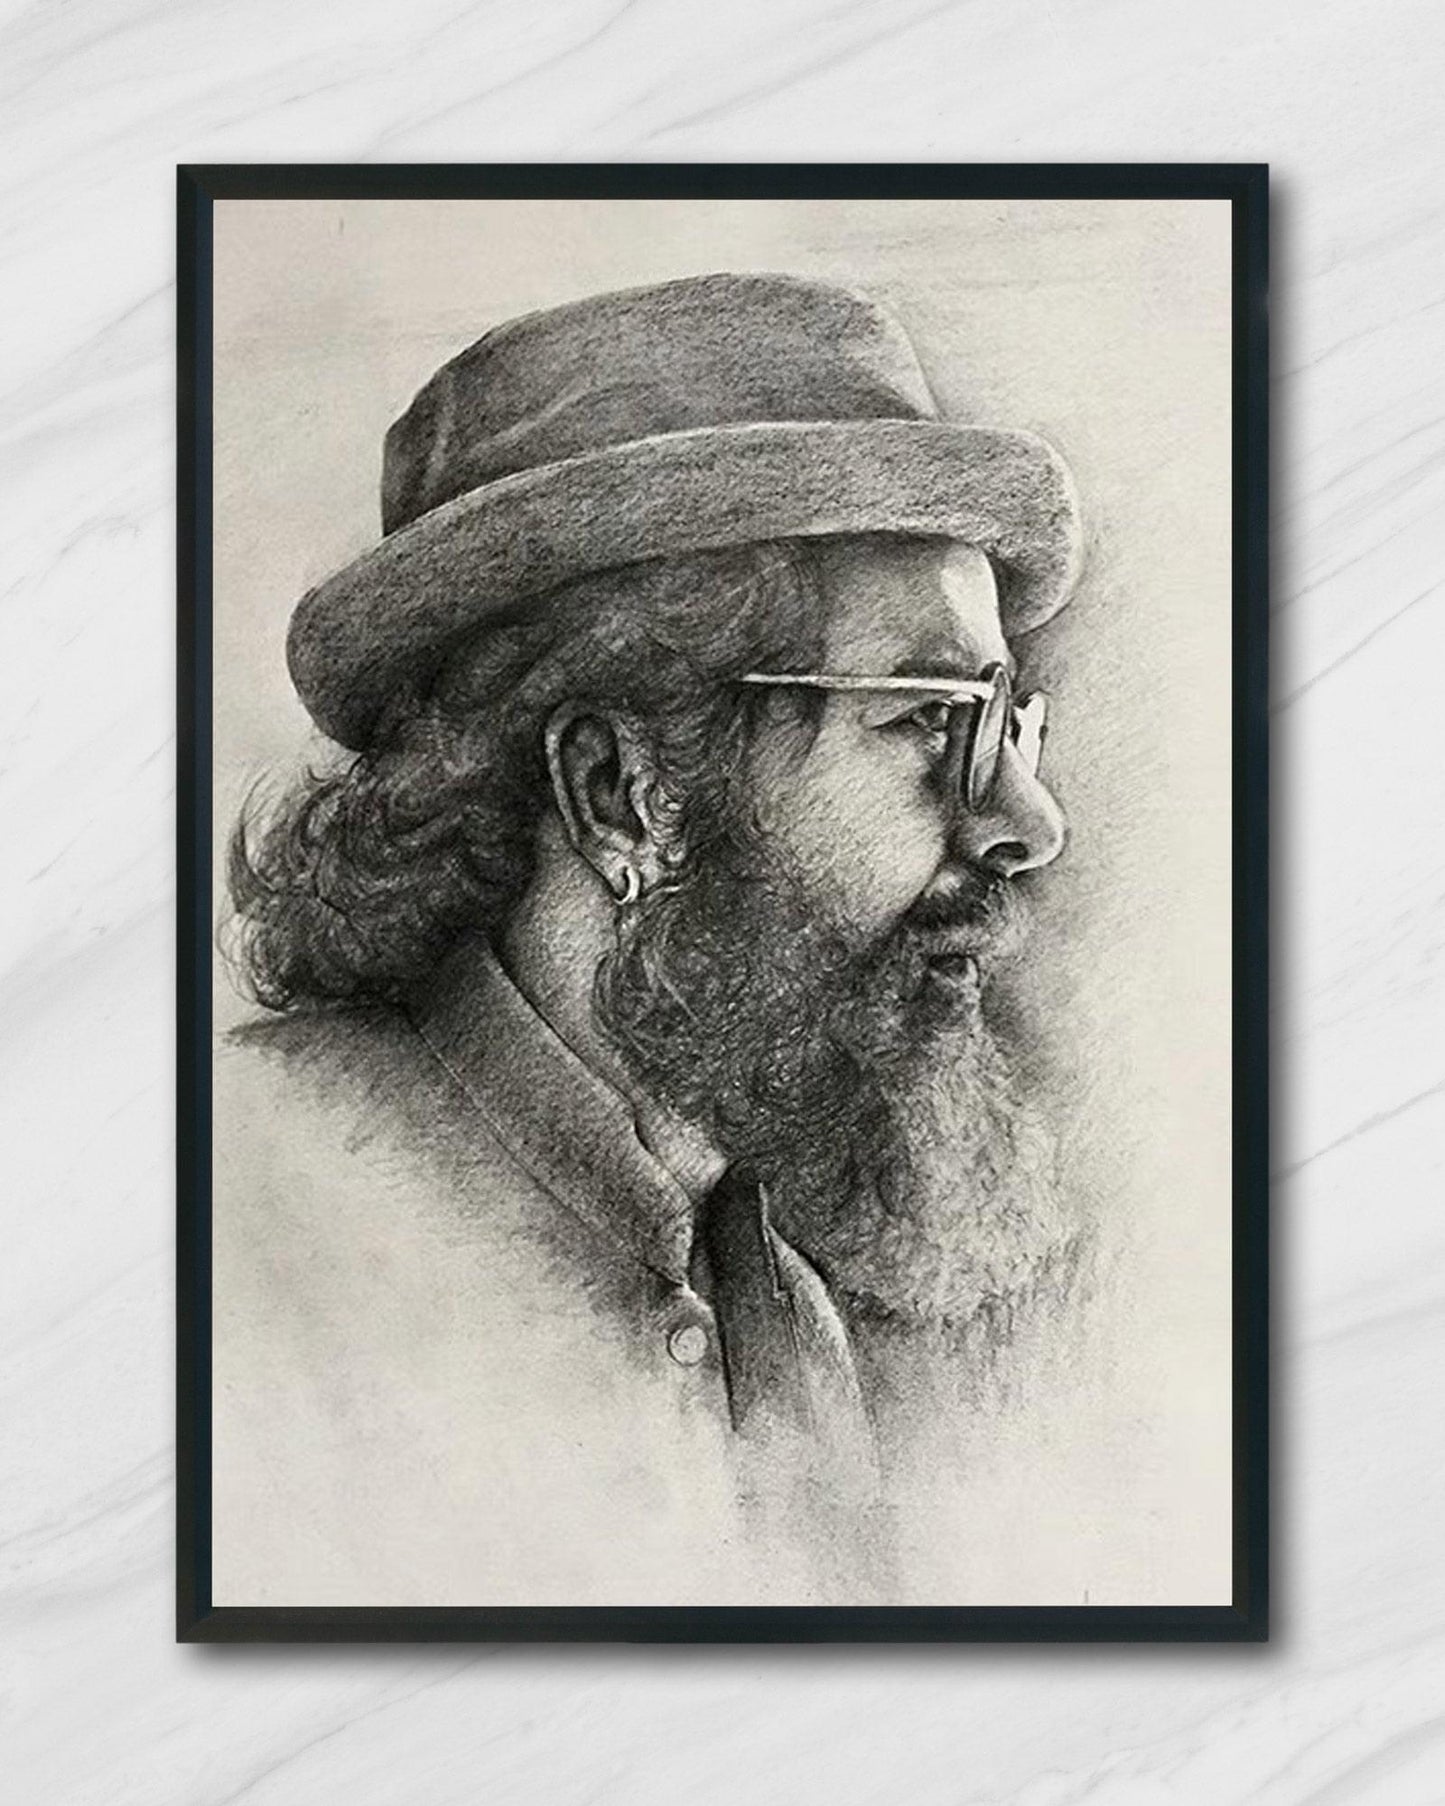 Pencil Sketch Portrait